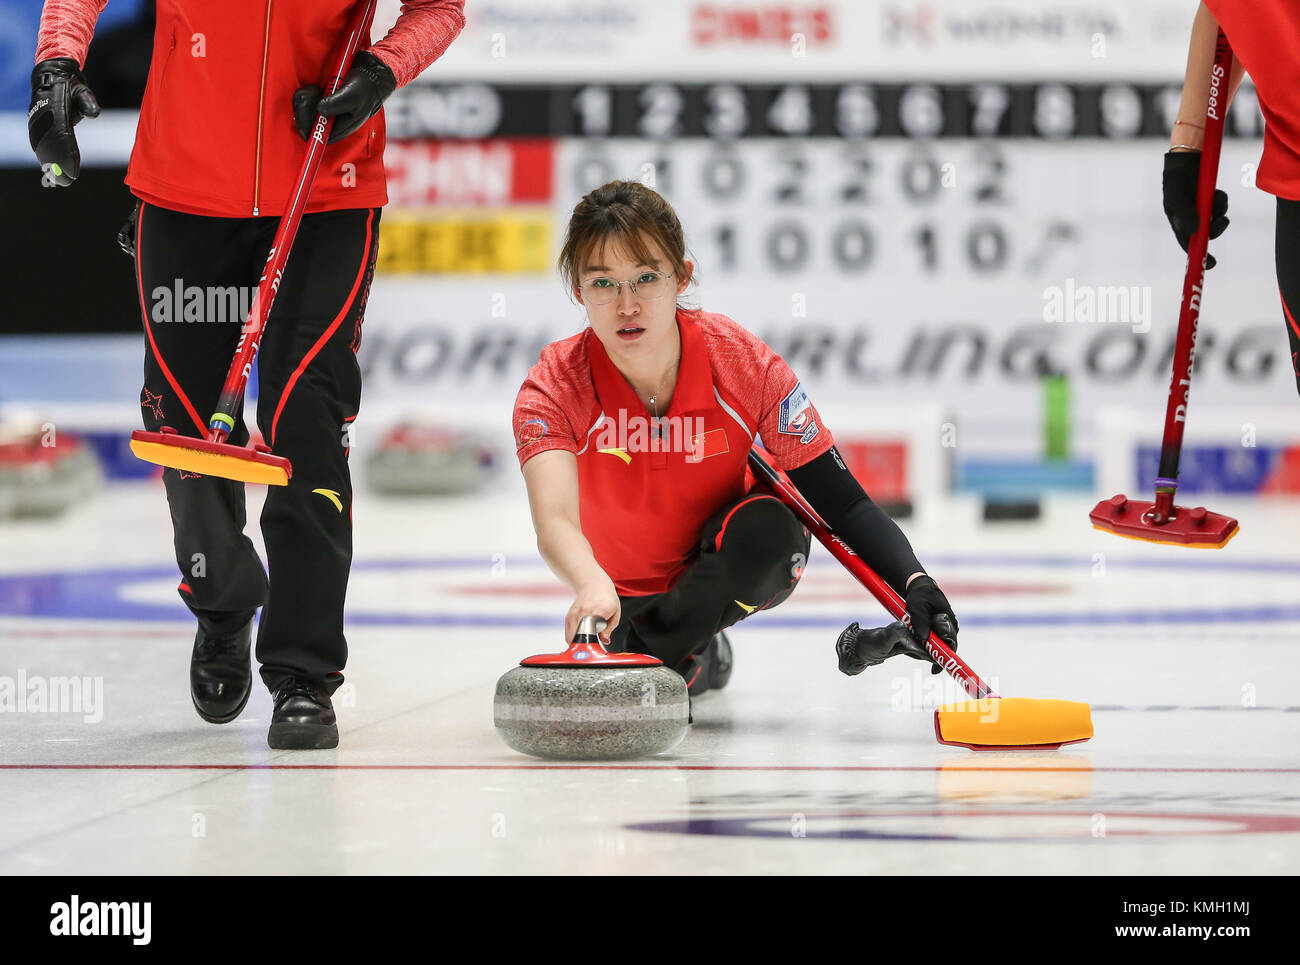 (171209) -- pilsen, déc. 9, 2017 (Xinhua) -- la Chine ma jingyi jette la pierre au cours d'un match de qualification olympique de curling aux Jeux olympiques d'hiver de 2018 à pyeongchang entre les équipes féminines de la Chine et l'Allemagne à Pilsen, en République tchèque, le déc. 9, 2017. (Xinhua/yuqi shan) Banque D'Images